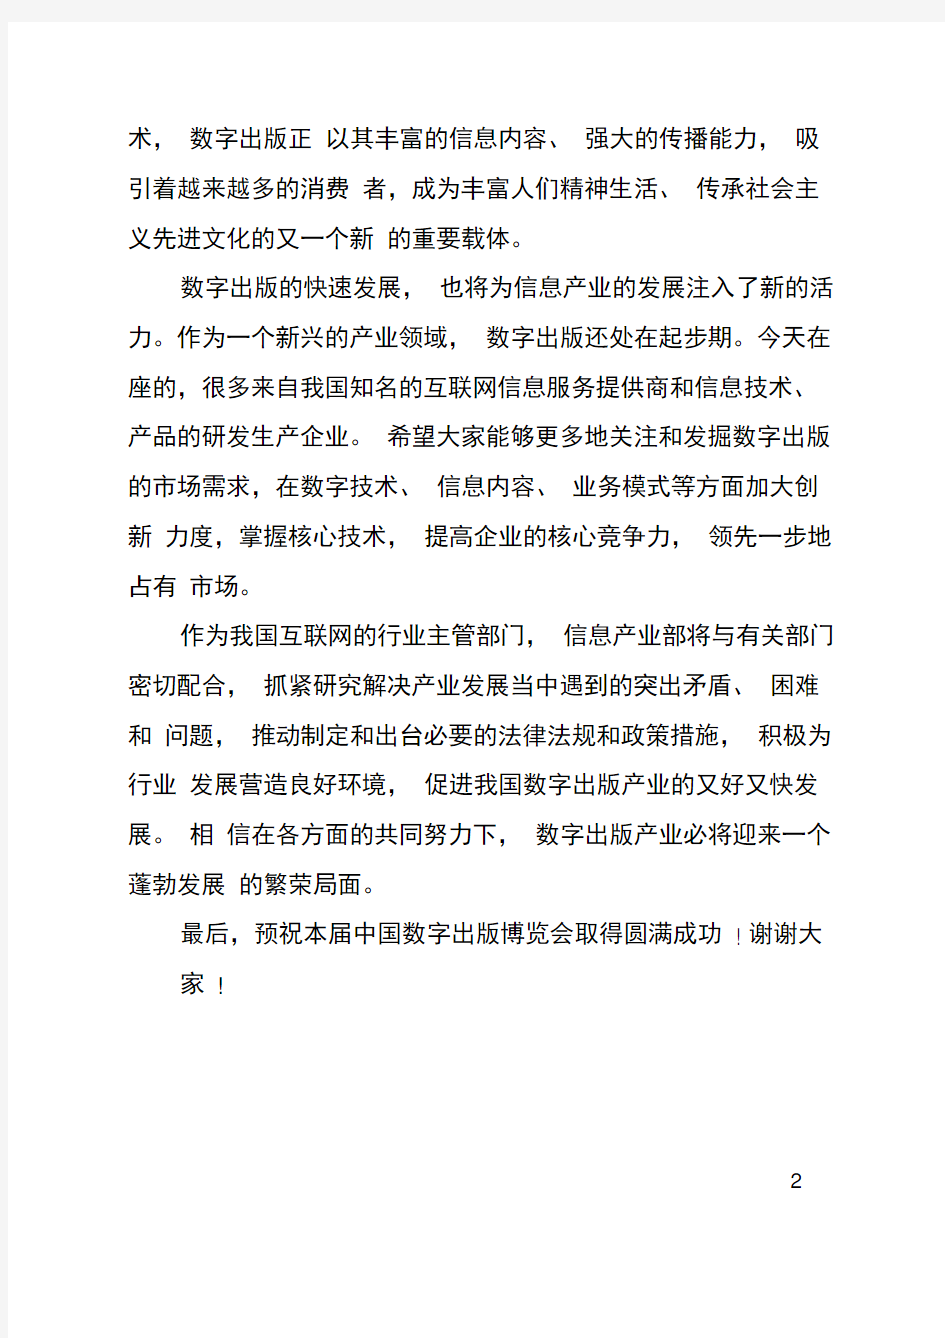 在第二届中国数字出版博览会开幕式上的致辞